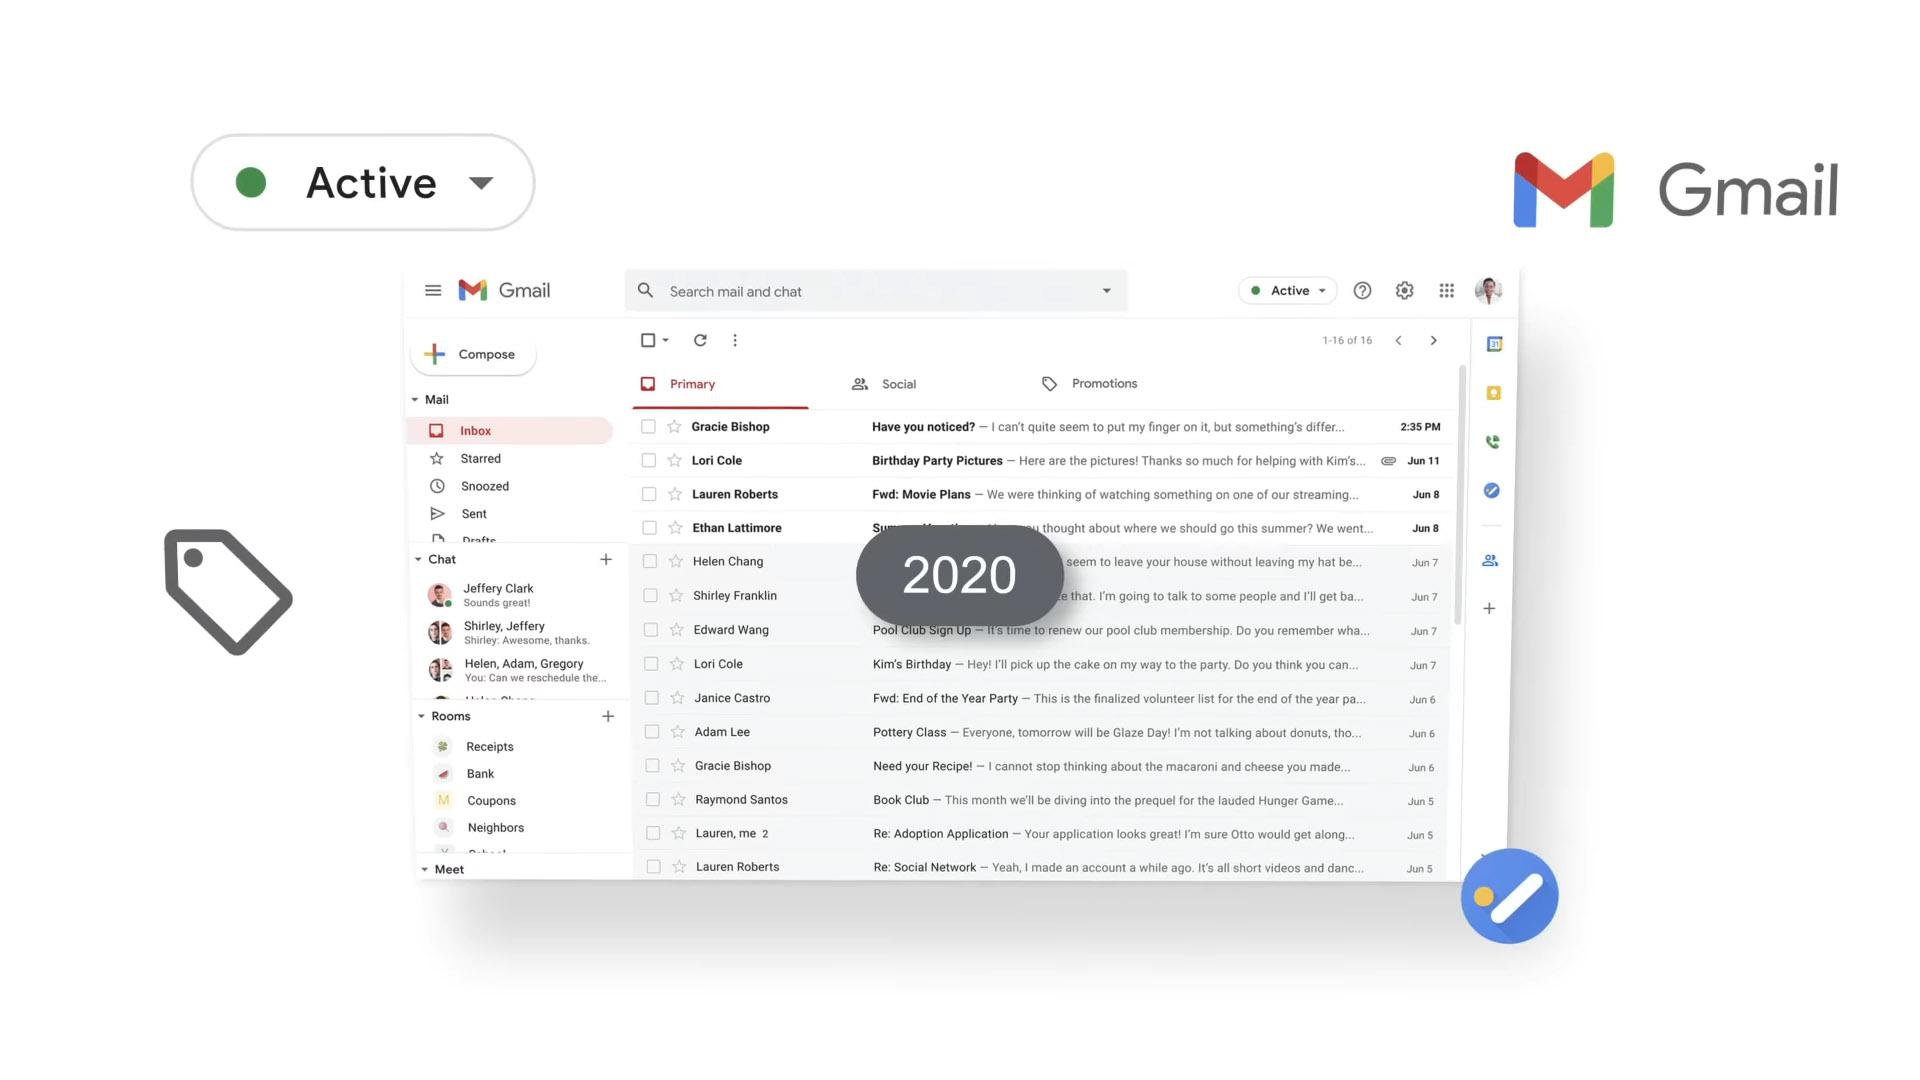 Interface do Gmail em 2020, mais robusta e acessível para os usuários. (Fonte: Google / Reprodução)